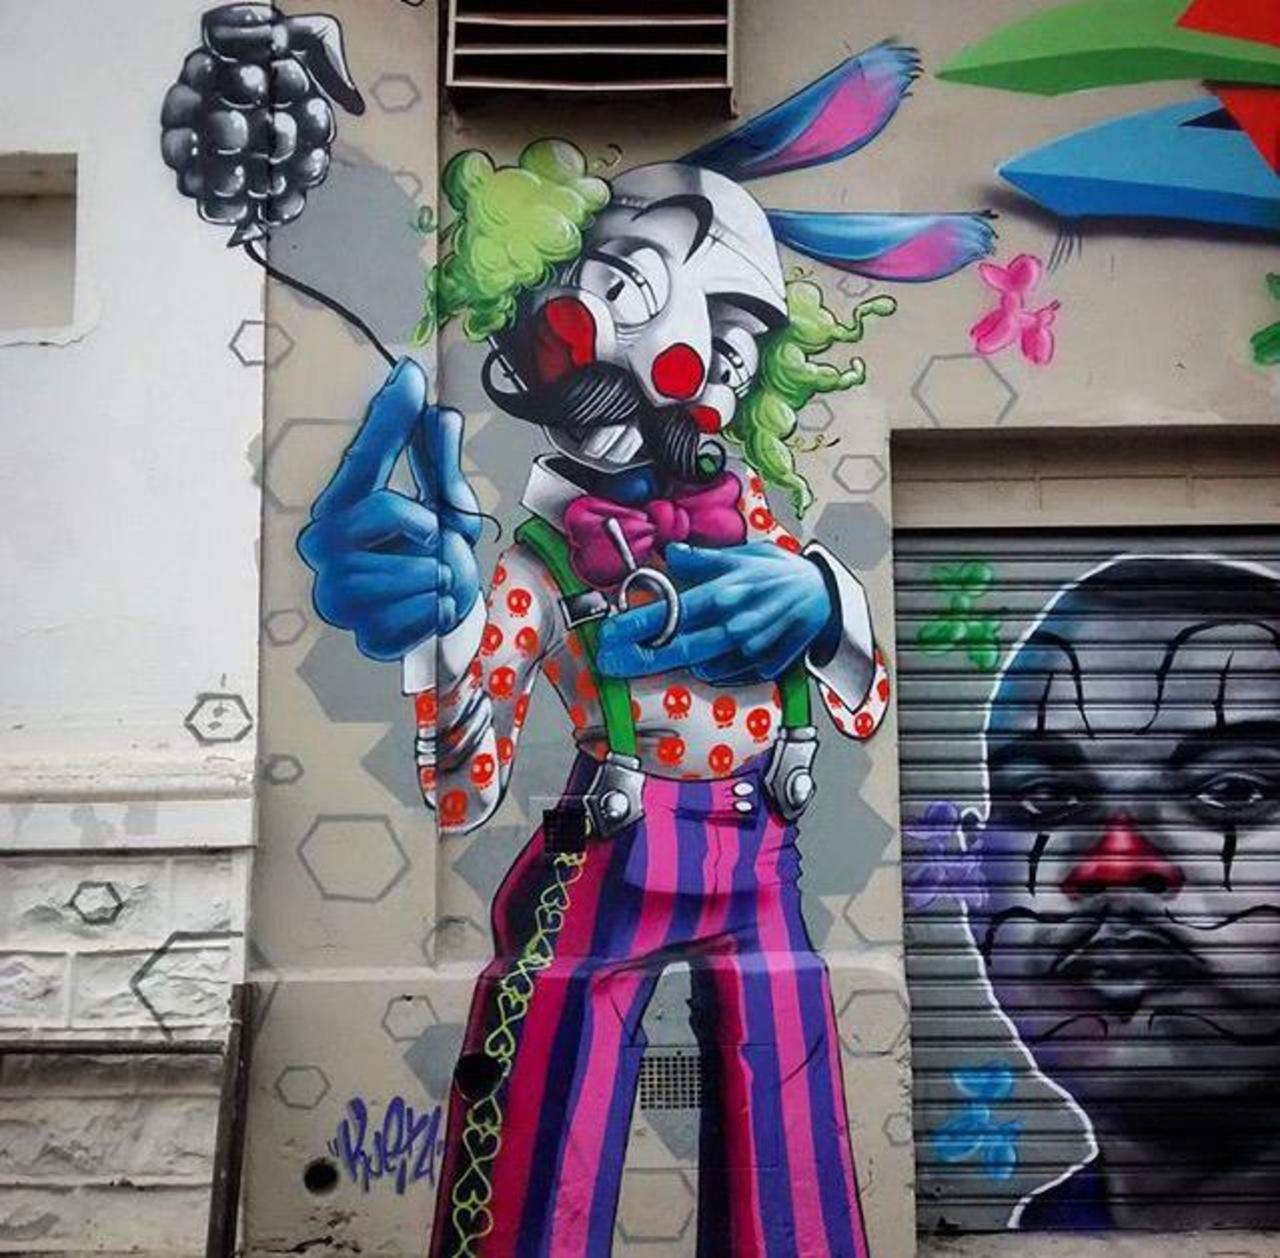 New Street Art by Karen Kueia 

#art #graffiti #mural #streetart http://t.co/rPzbrW6bmA